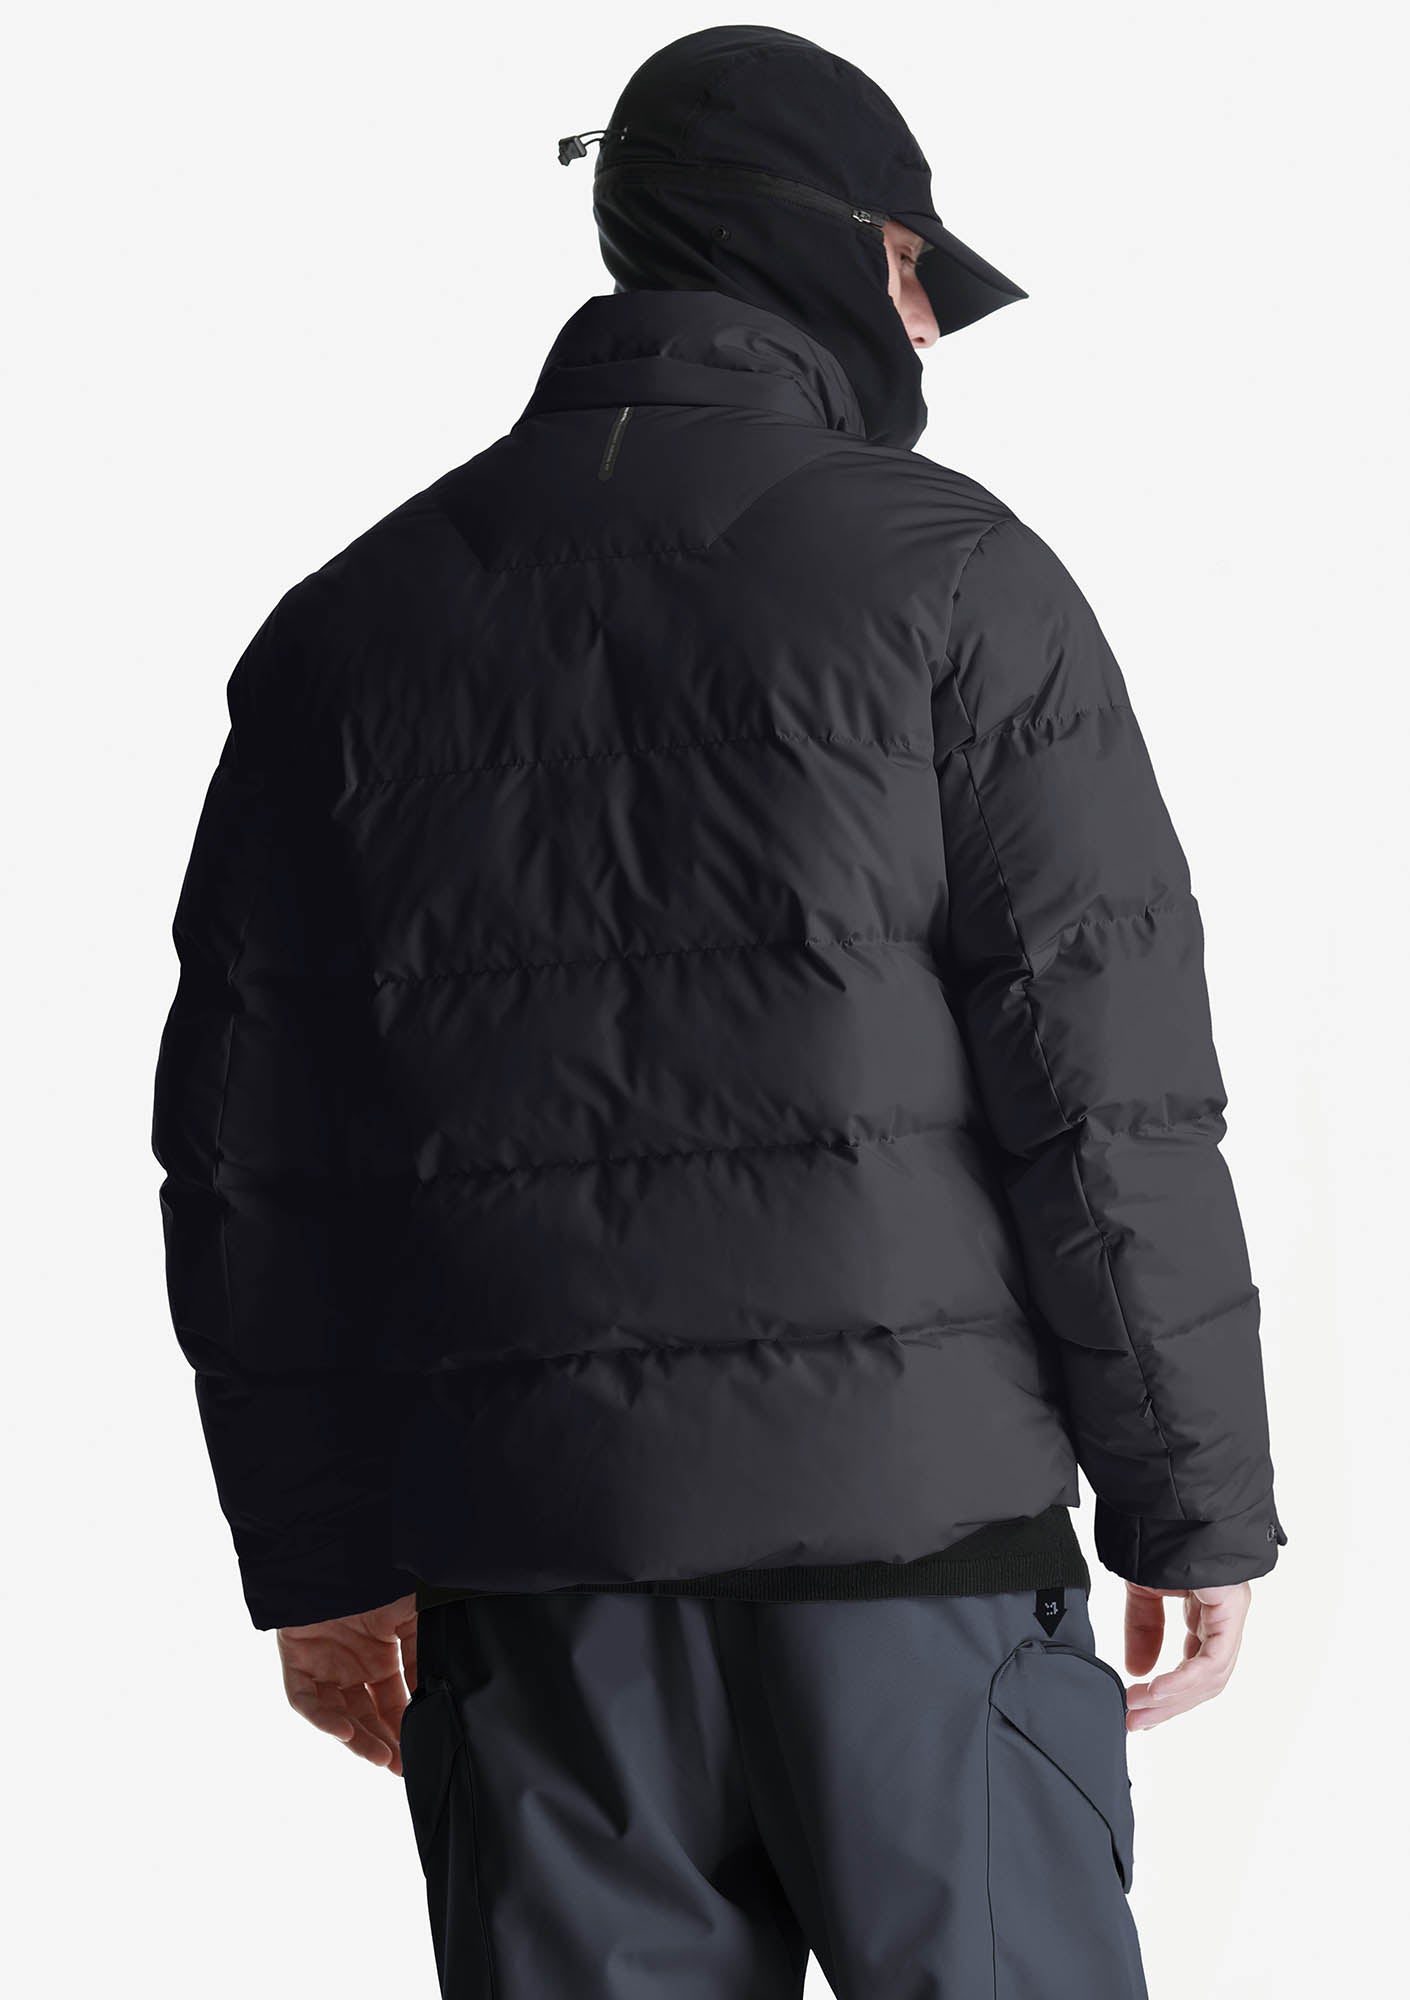 AITKEN Waterproof Short Puffer Jacket Qm440-1